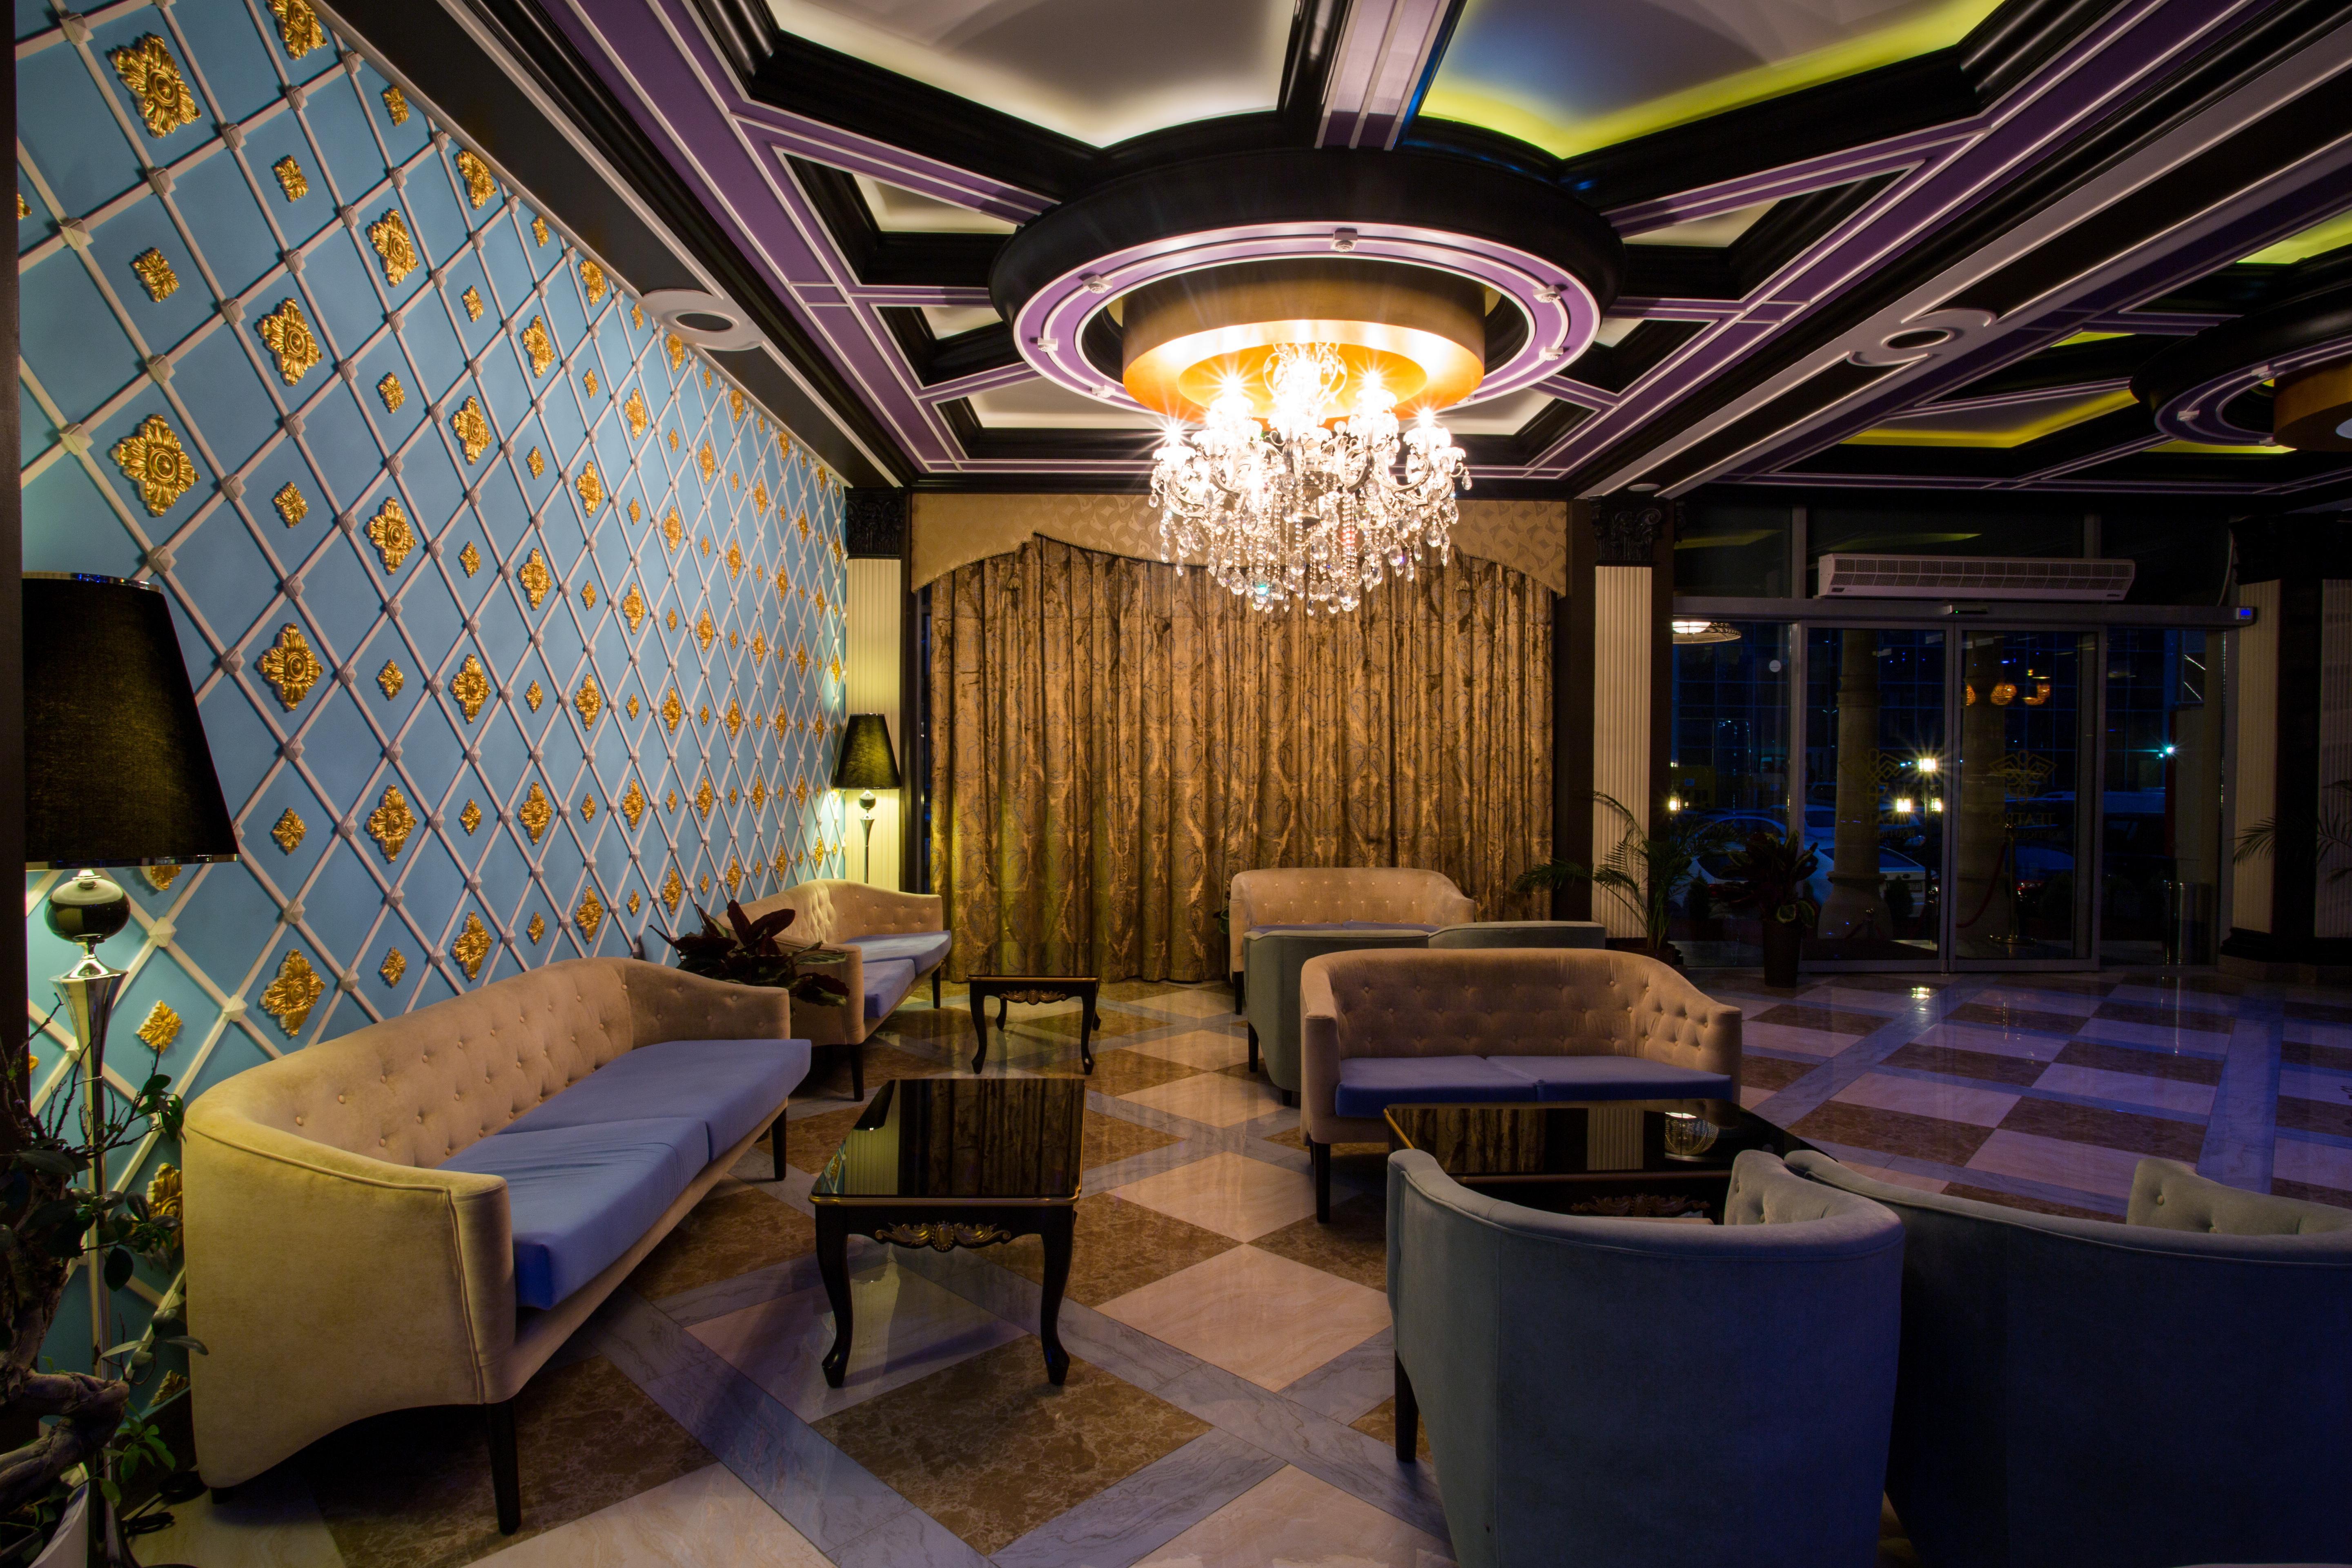 Teatro Boutique Hotel Baku Extérieur photo